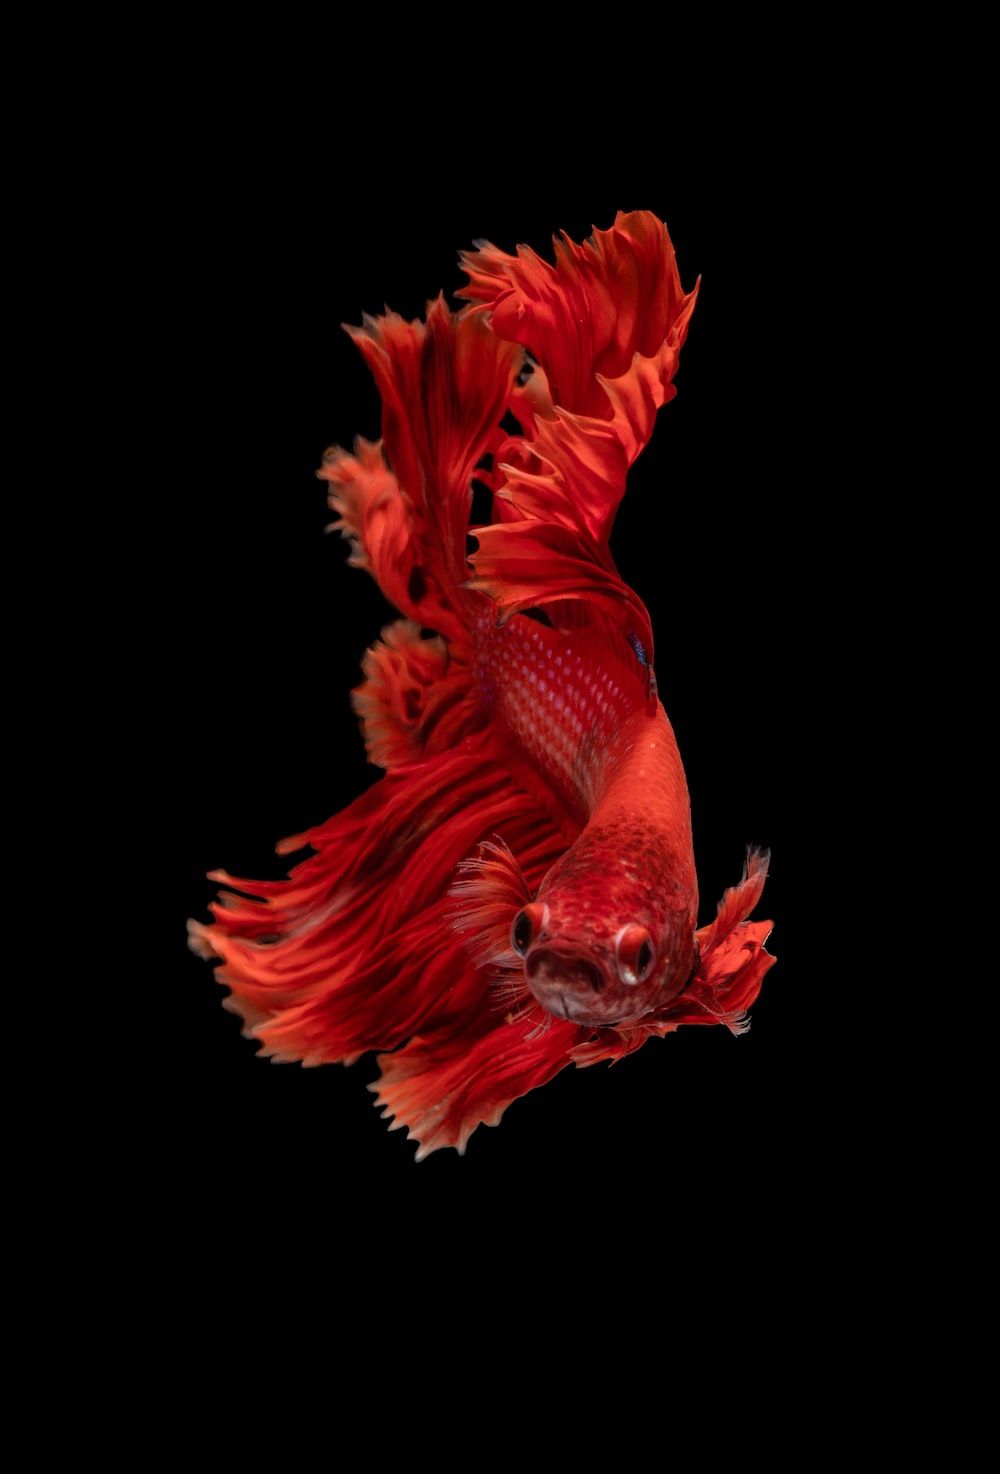  Fisch Hintergrundbild 1000x1474. Fish Wallpaper Picture. Download Free Image